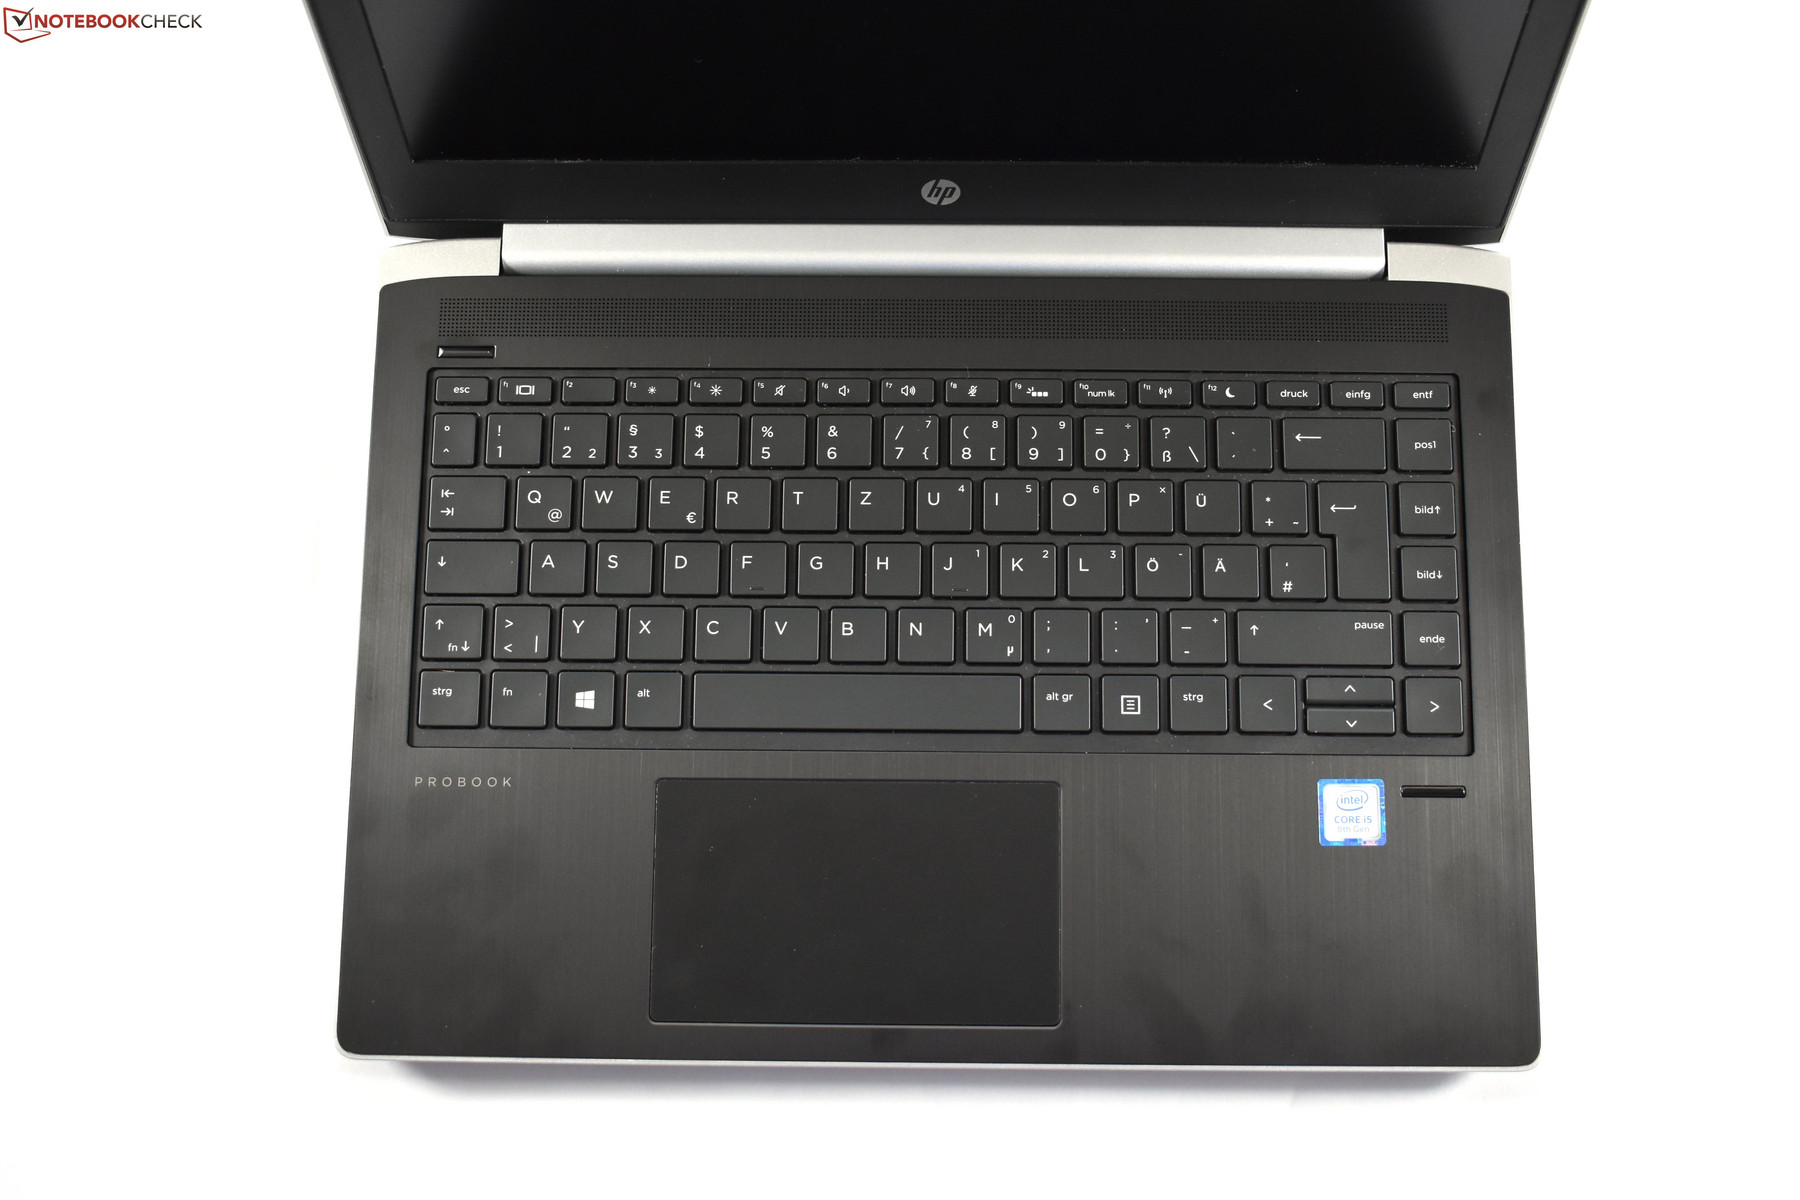 HP ProBook 430 G5 (i5-8250U, FHD) Laptop Review - NotebookCheck 